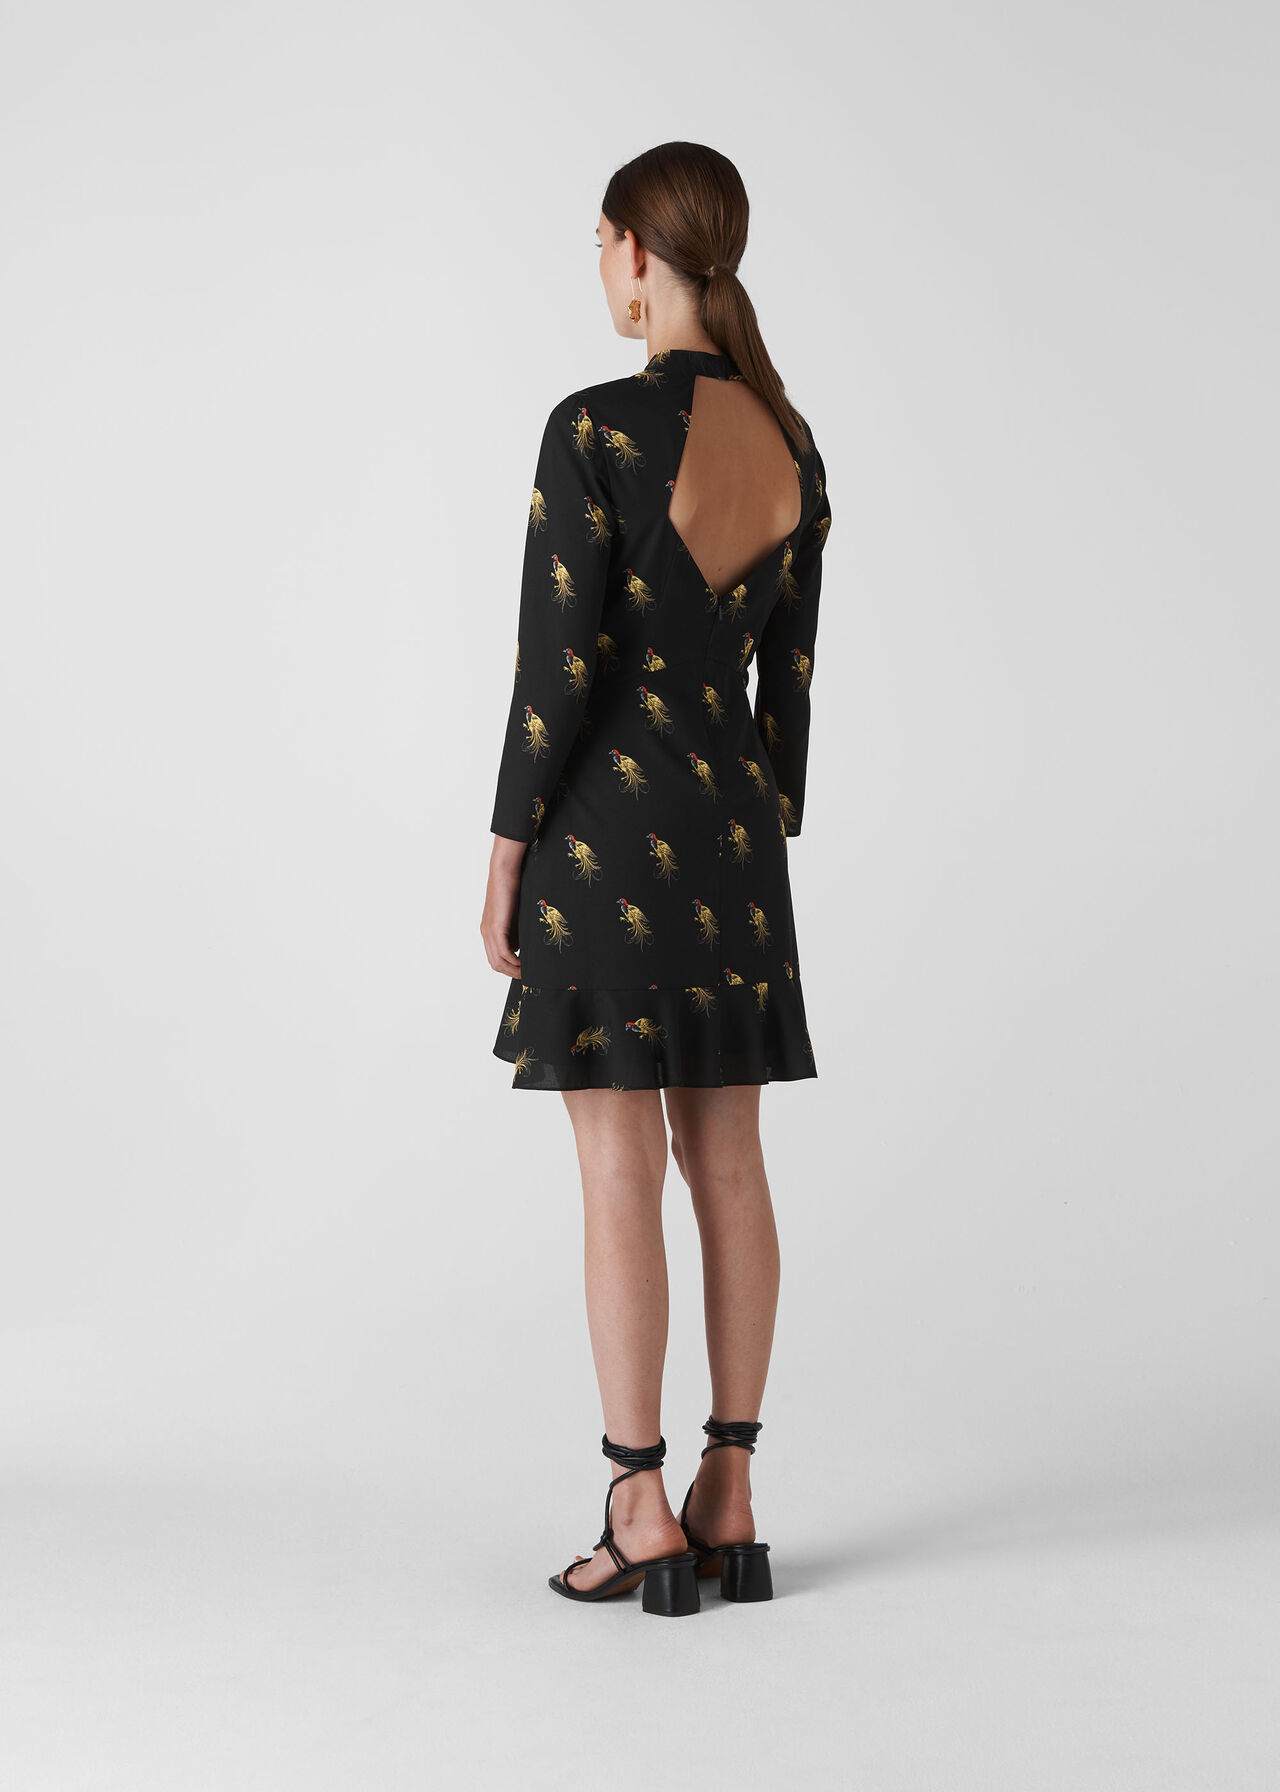 Woodpecker Print Dress